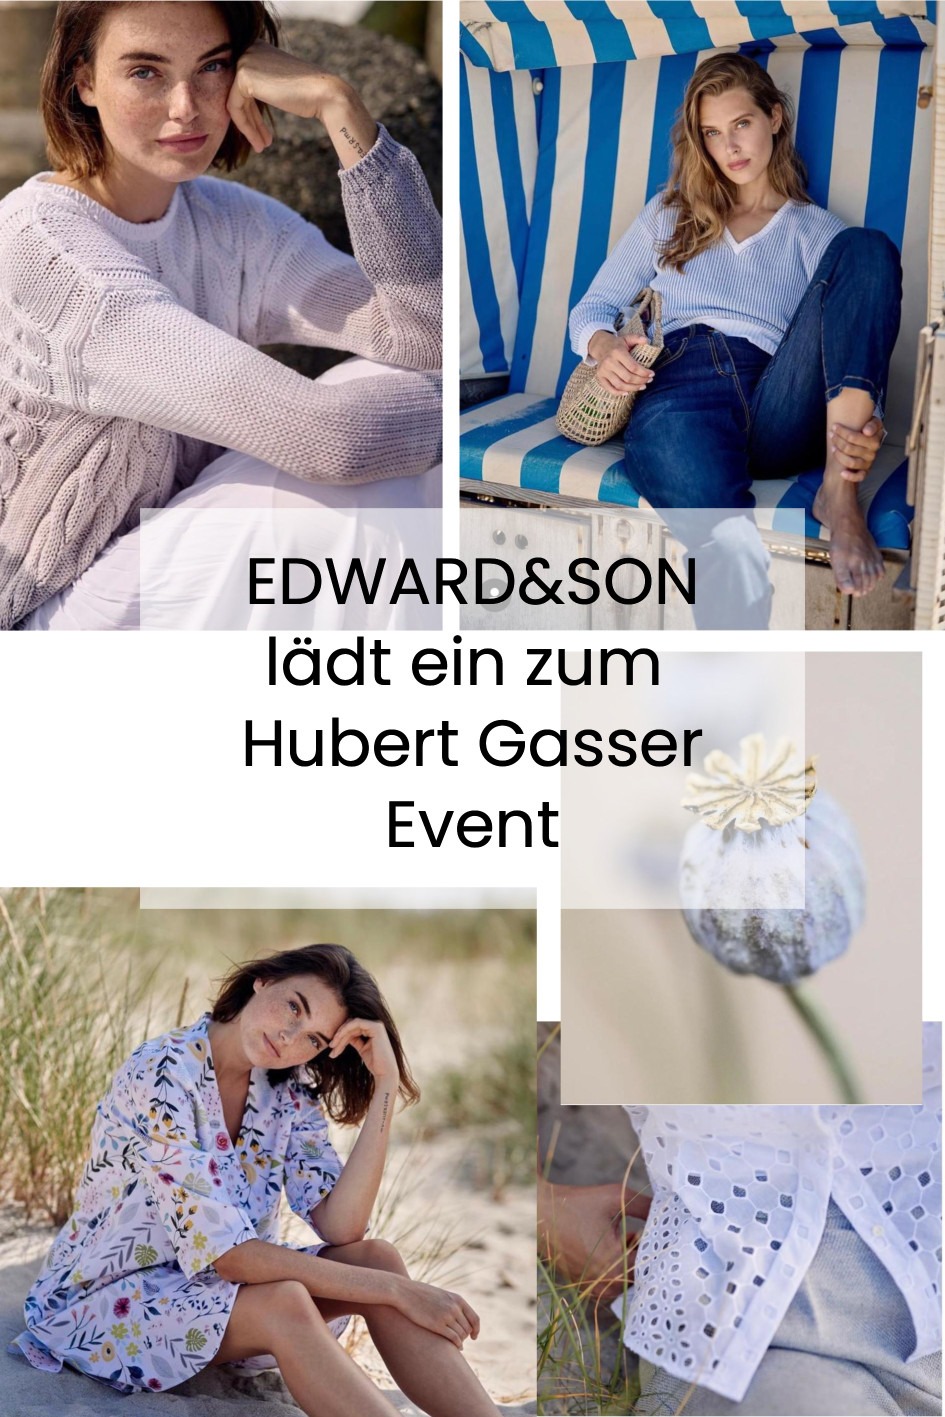 EDWARD&SON lädt ein zum Hubert Gasser Event vom 12.05 bis 14.05